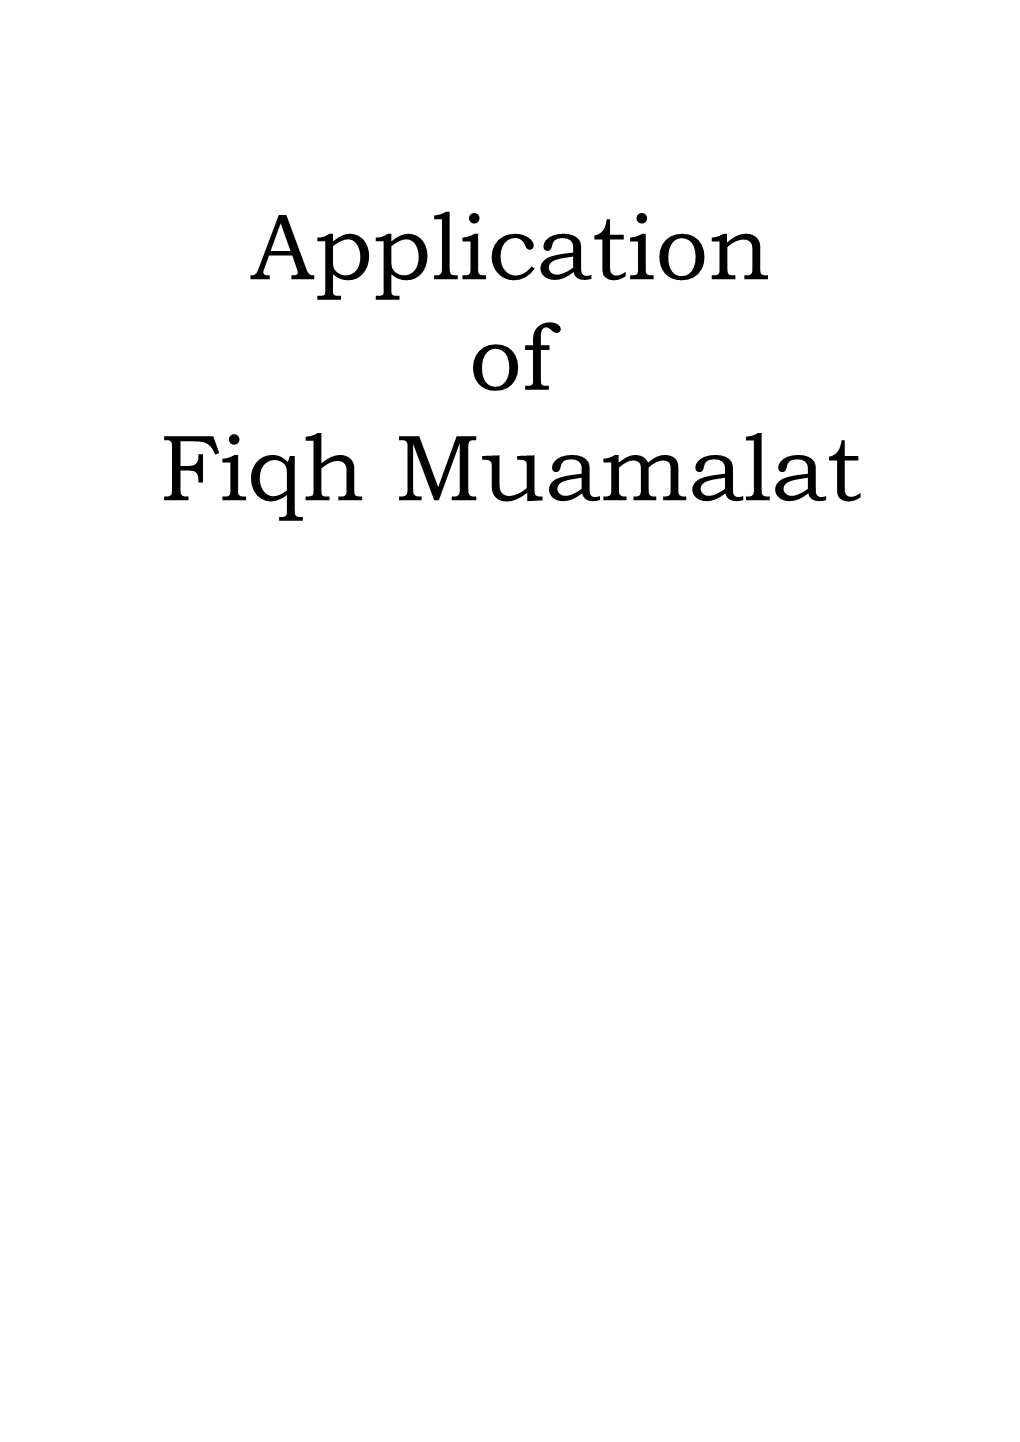 Application of Fiqh Muamalat